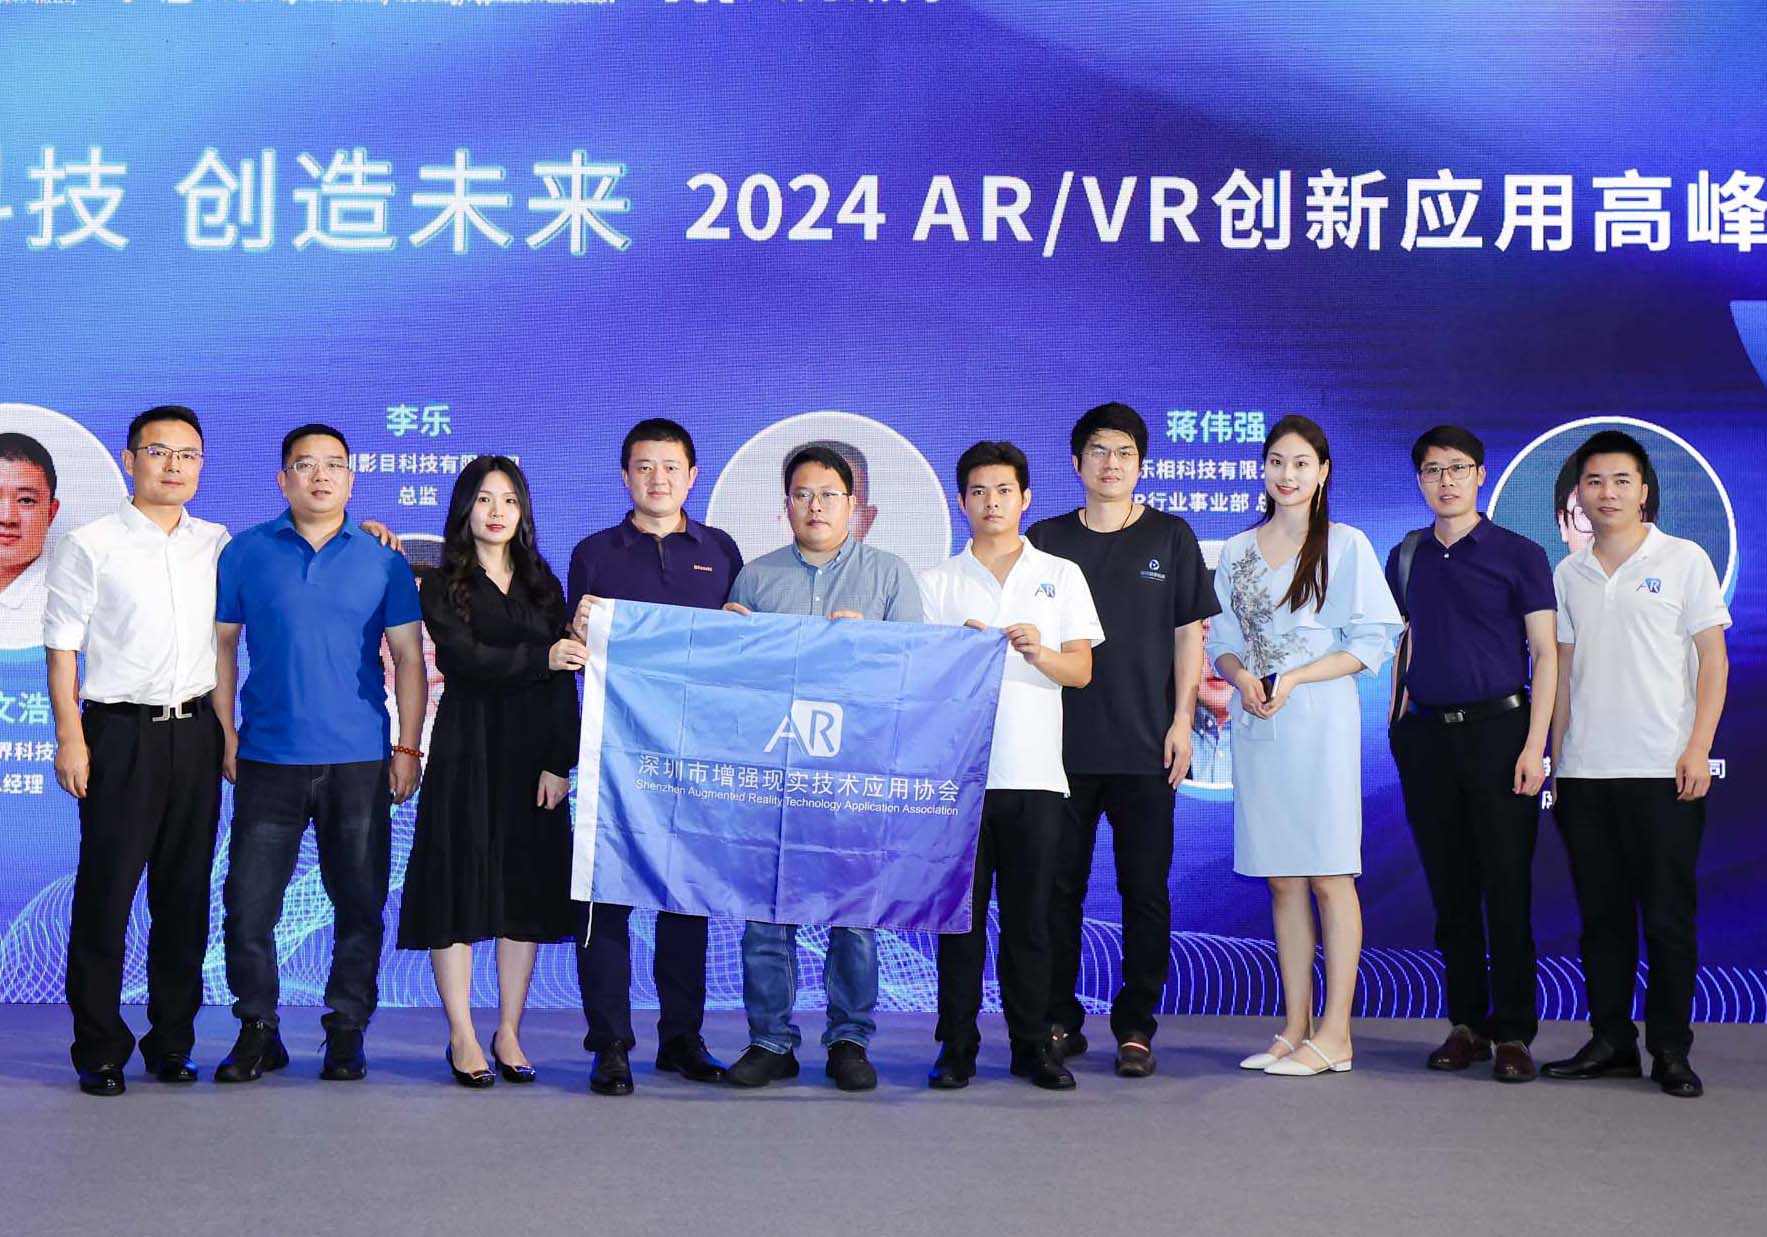 2024 AR/VR创新应用高峰论坛在深成功举办